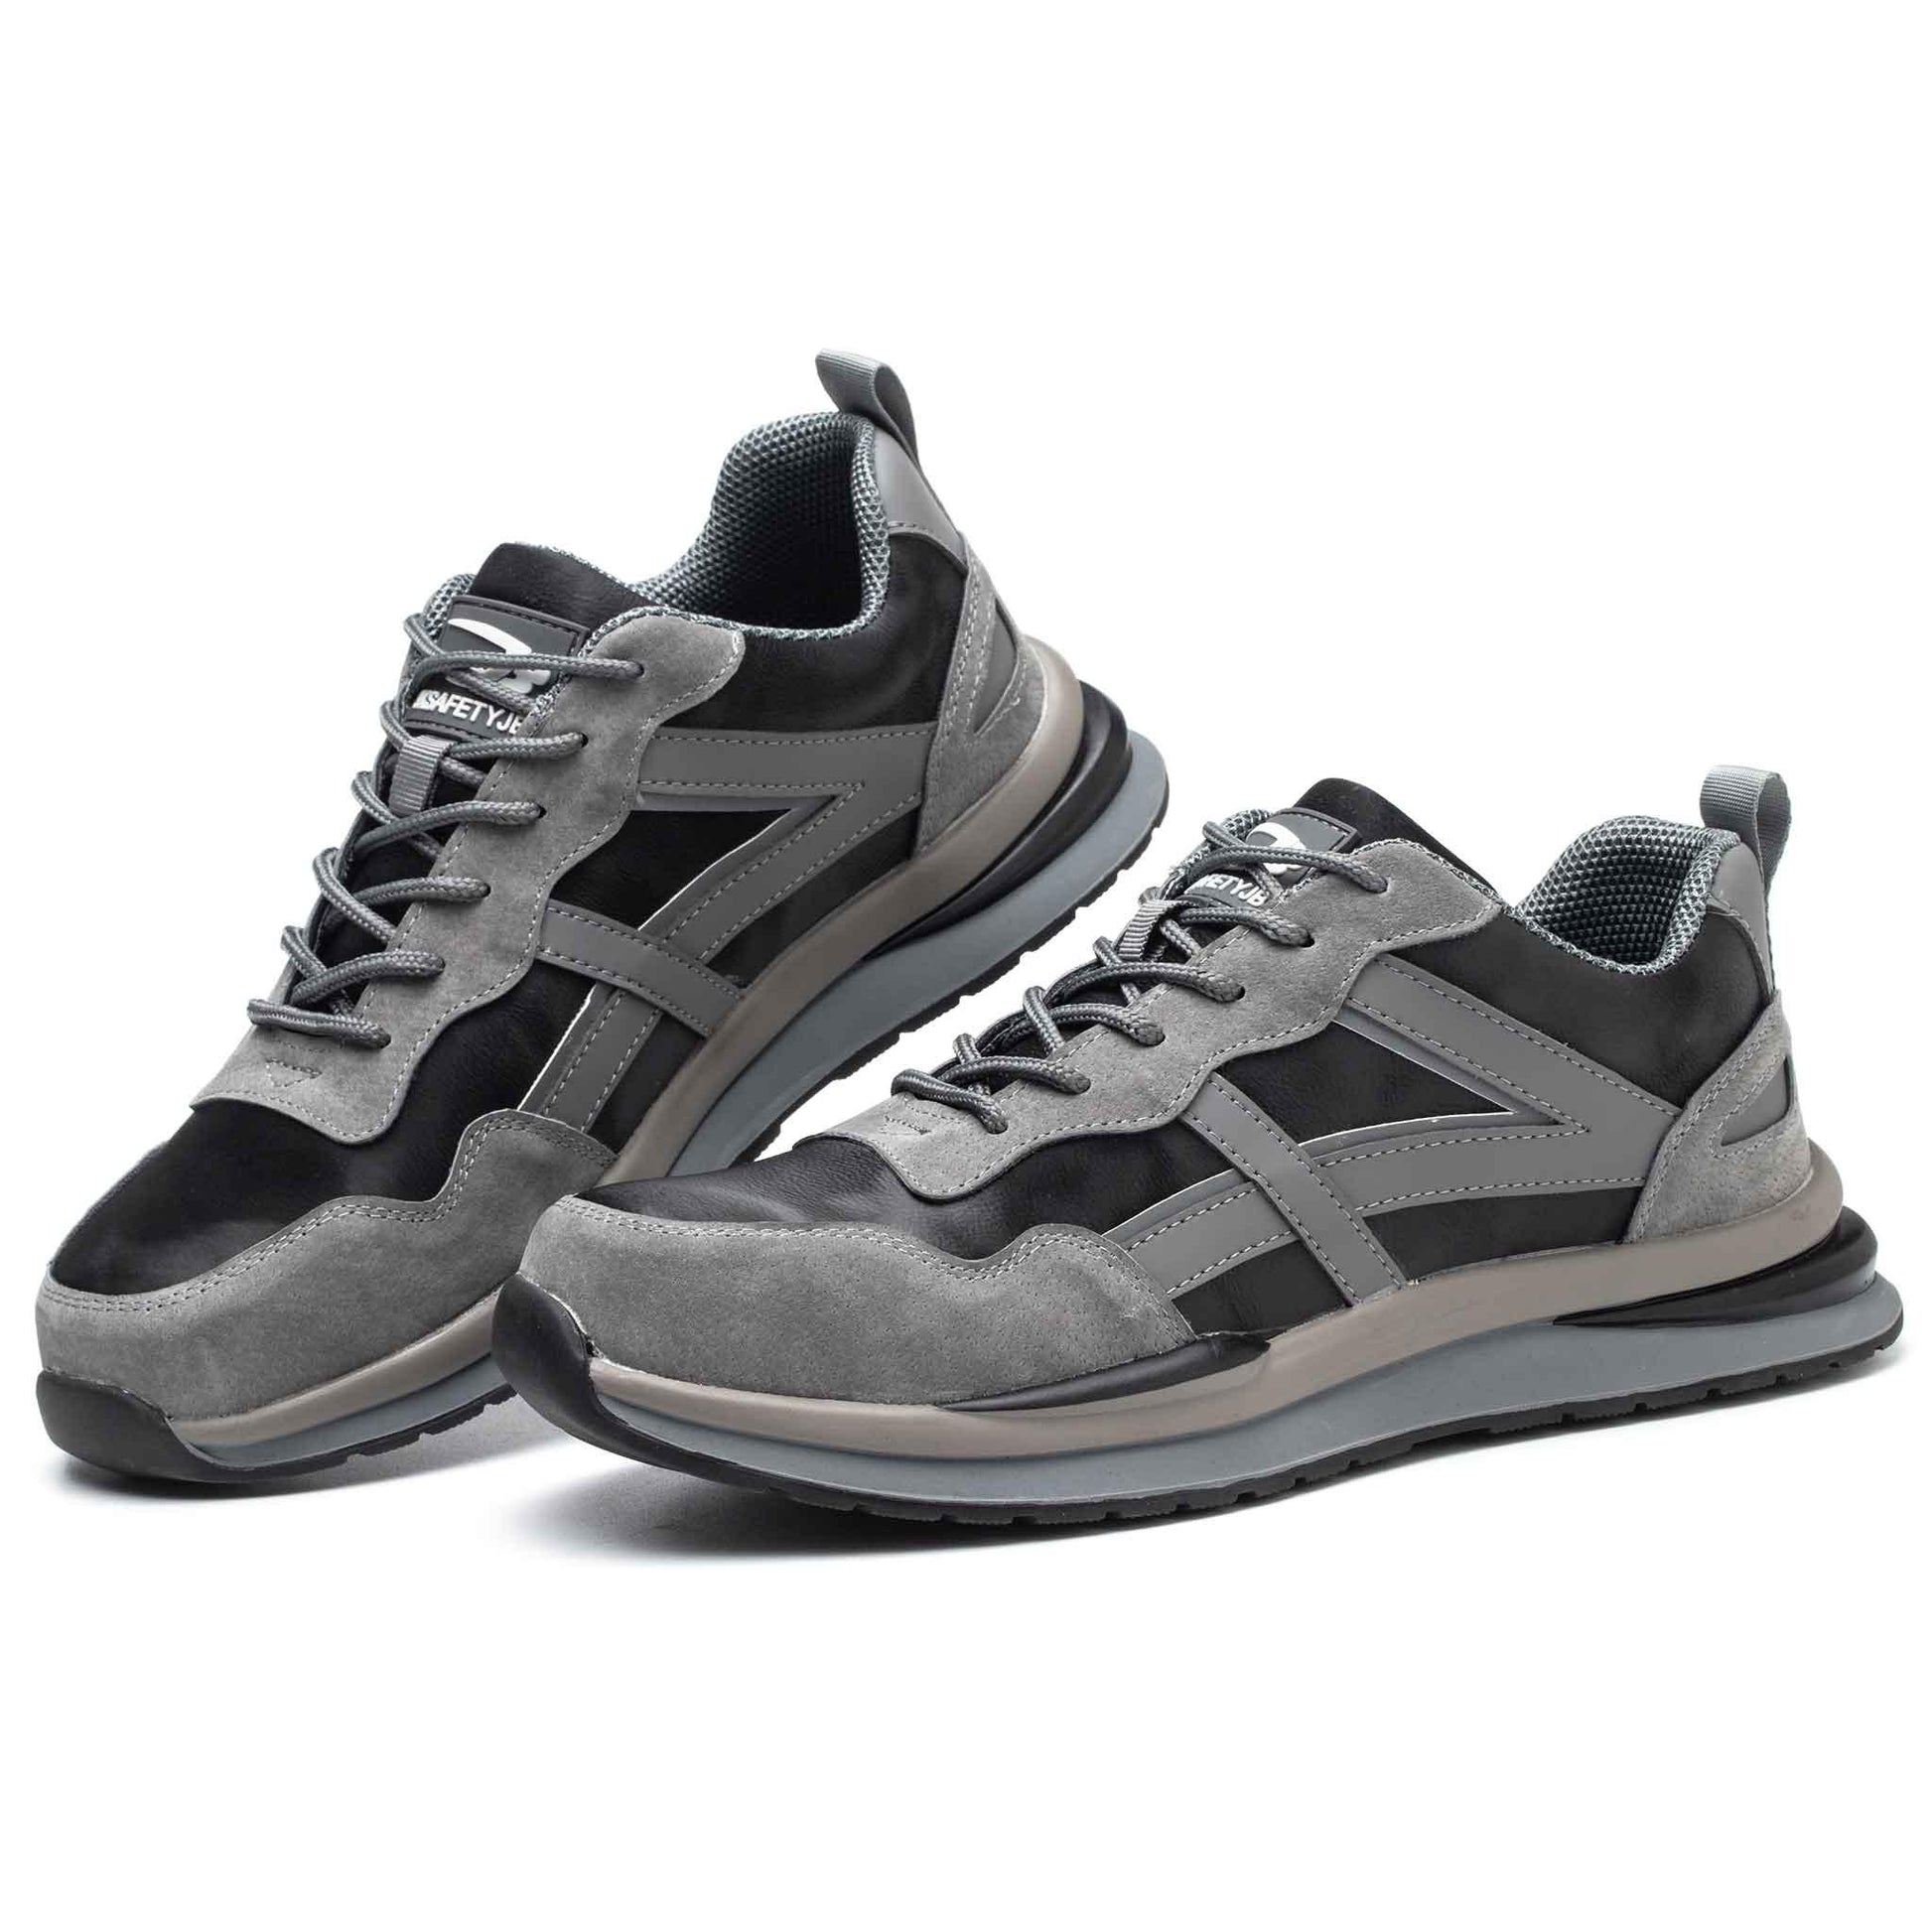 Men's Steel Toe Shoes - Waterproof | B205 - USINE PRO Footwear